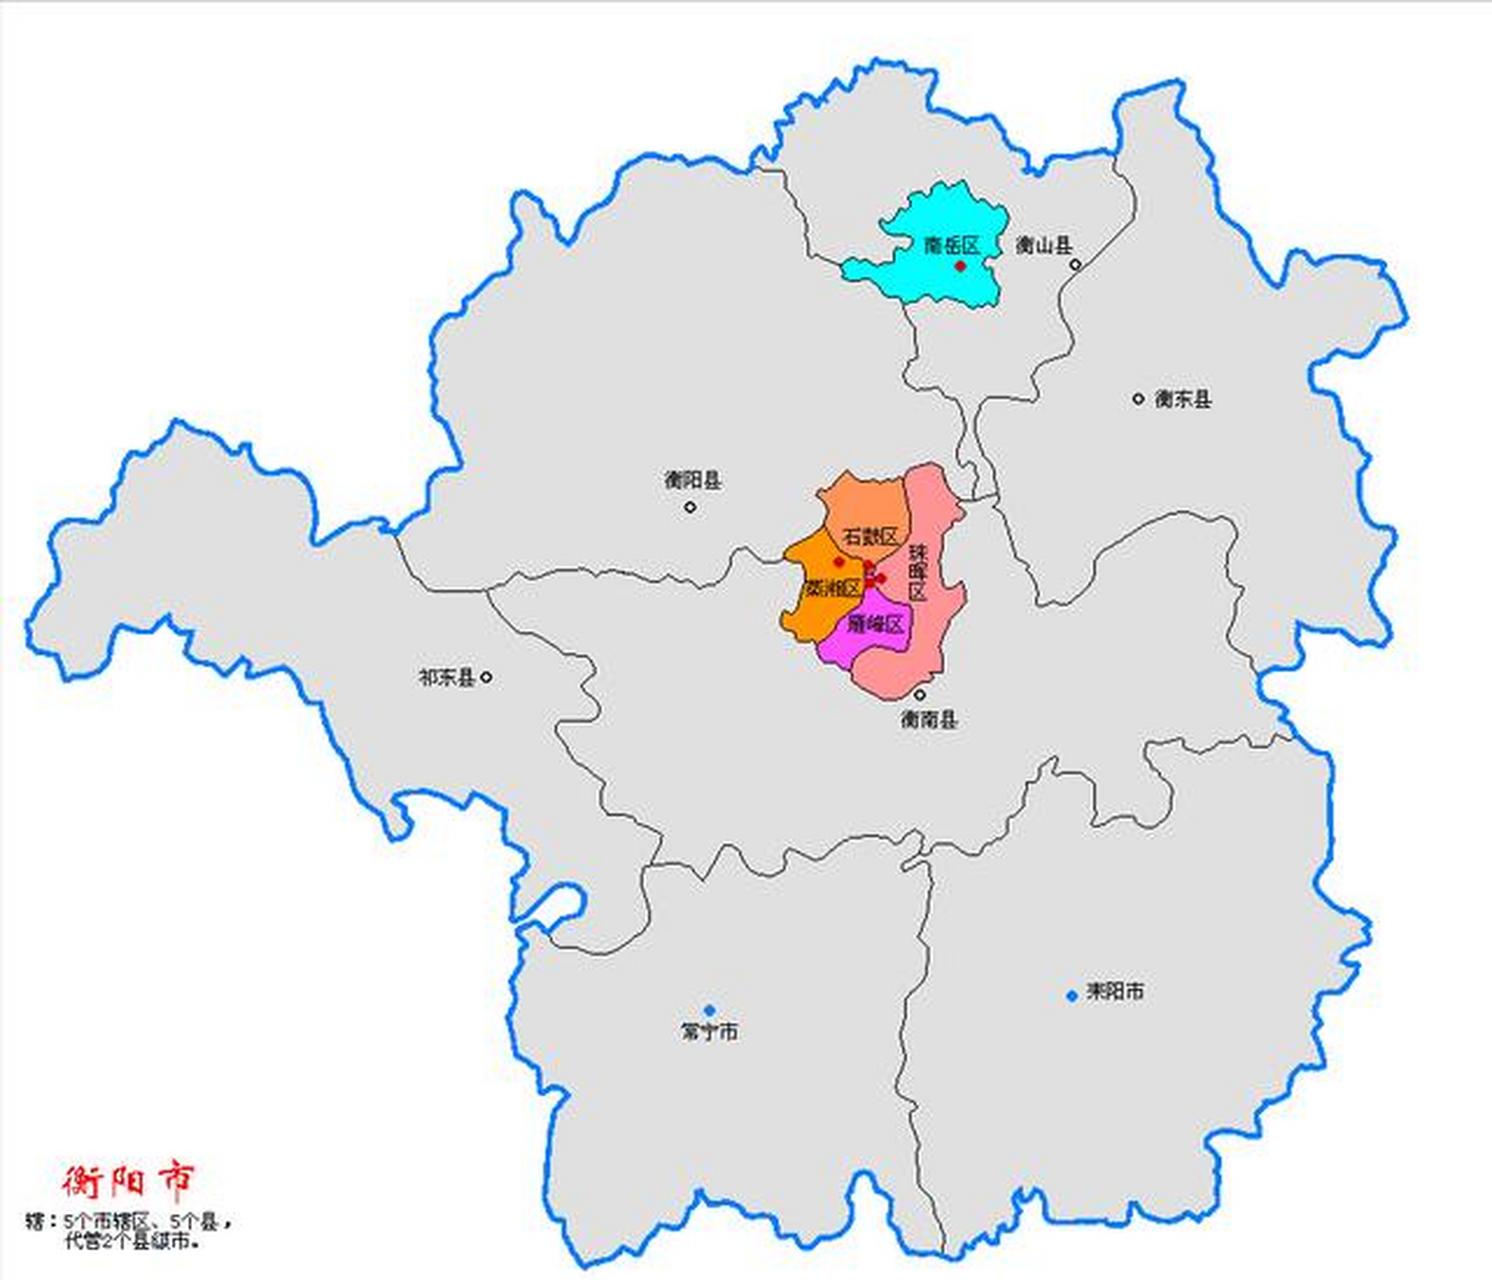 目前衡阳市最年轻的区委书记是,蒸湘区委书记曾梦龙,下辖县市区党委